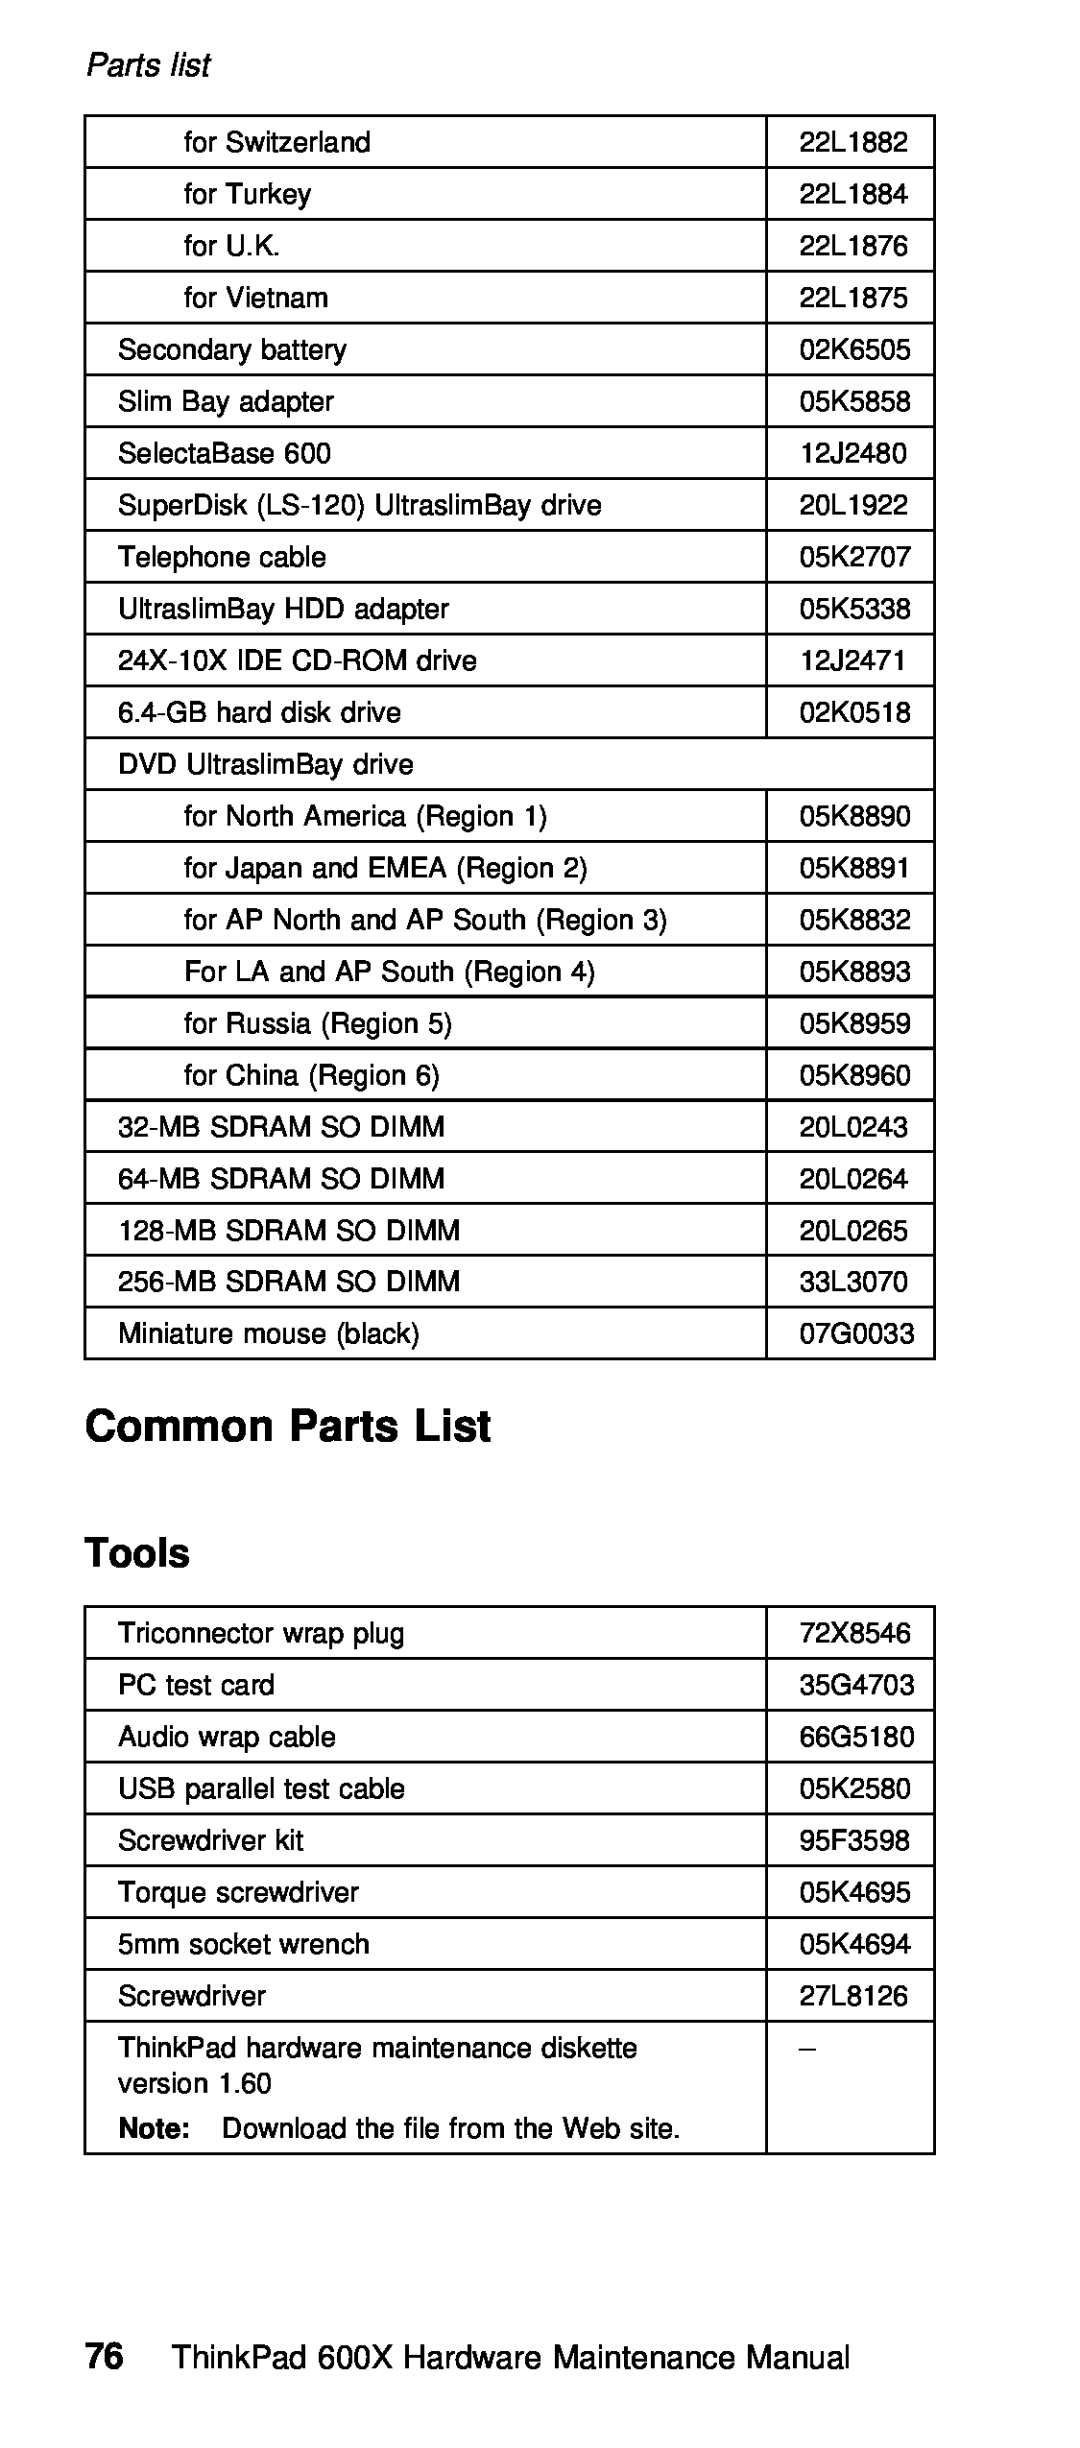 IBM 600X (MT 2646) manual List, Parts, Tools 